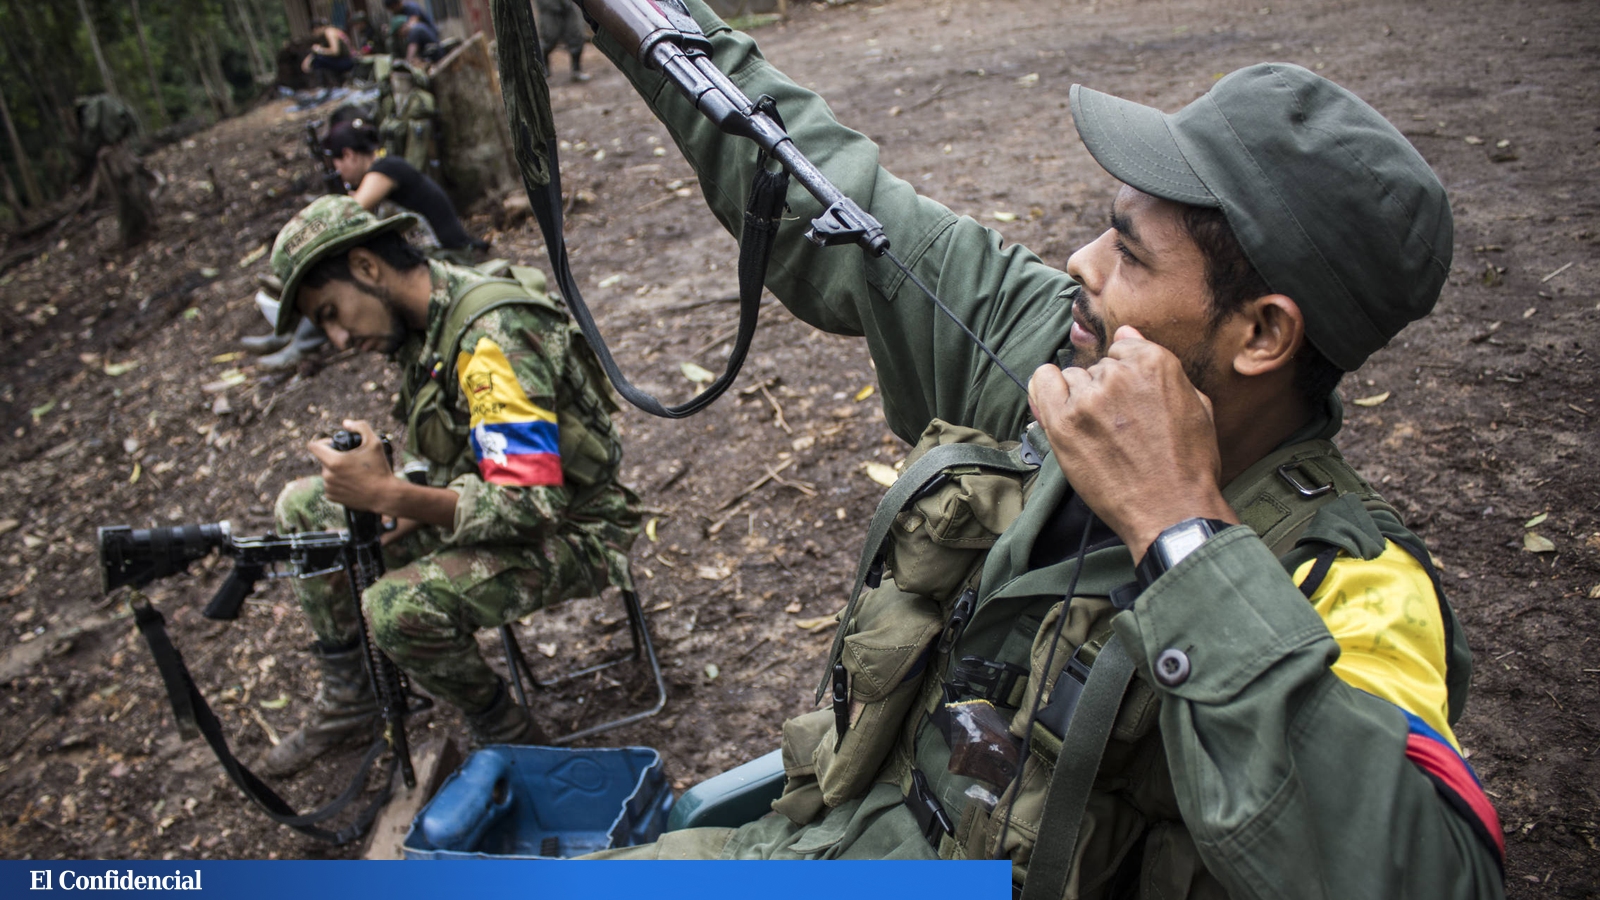 Lo duro es la paz": así y se sienten de las FARC